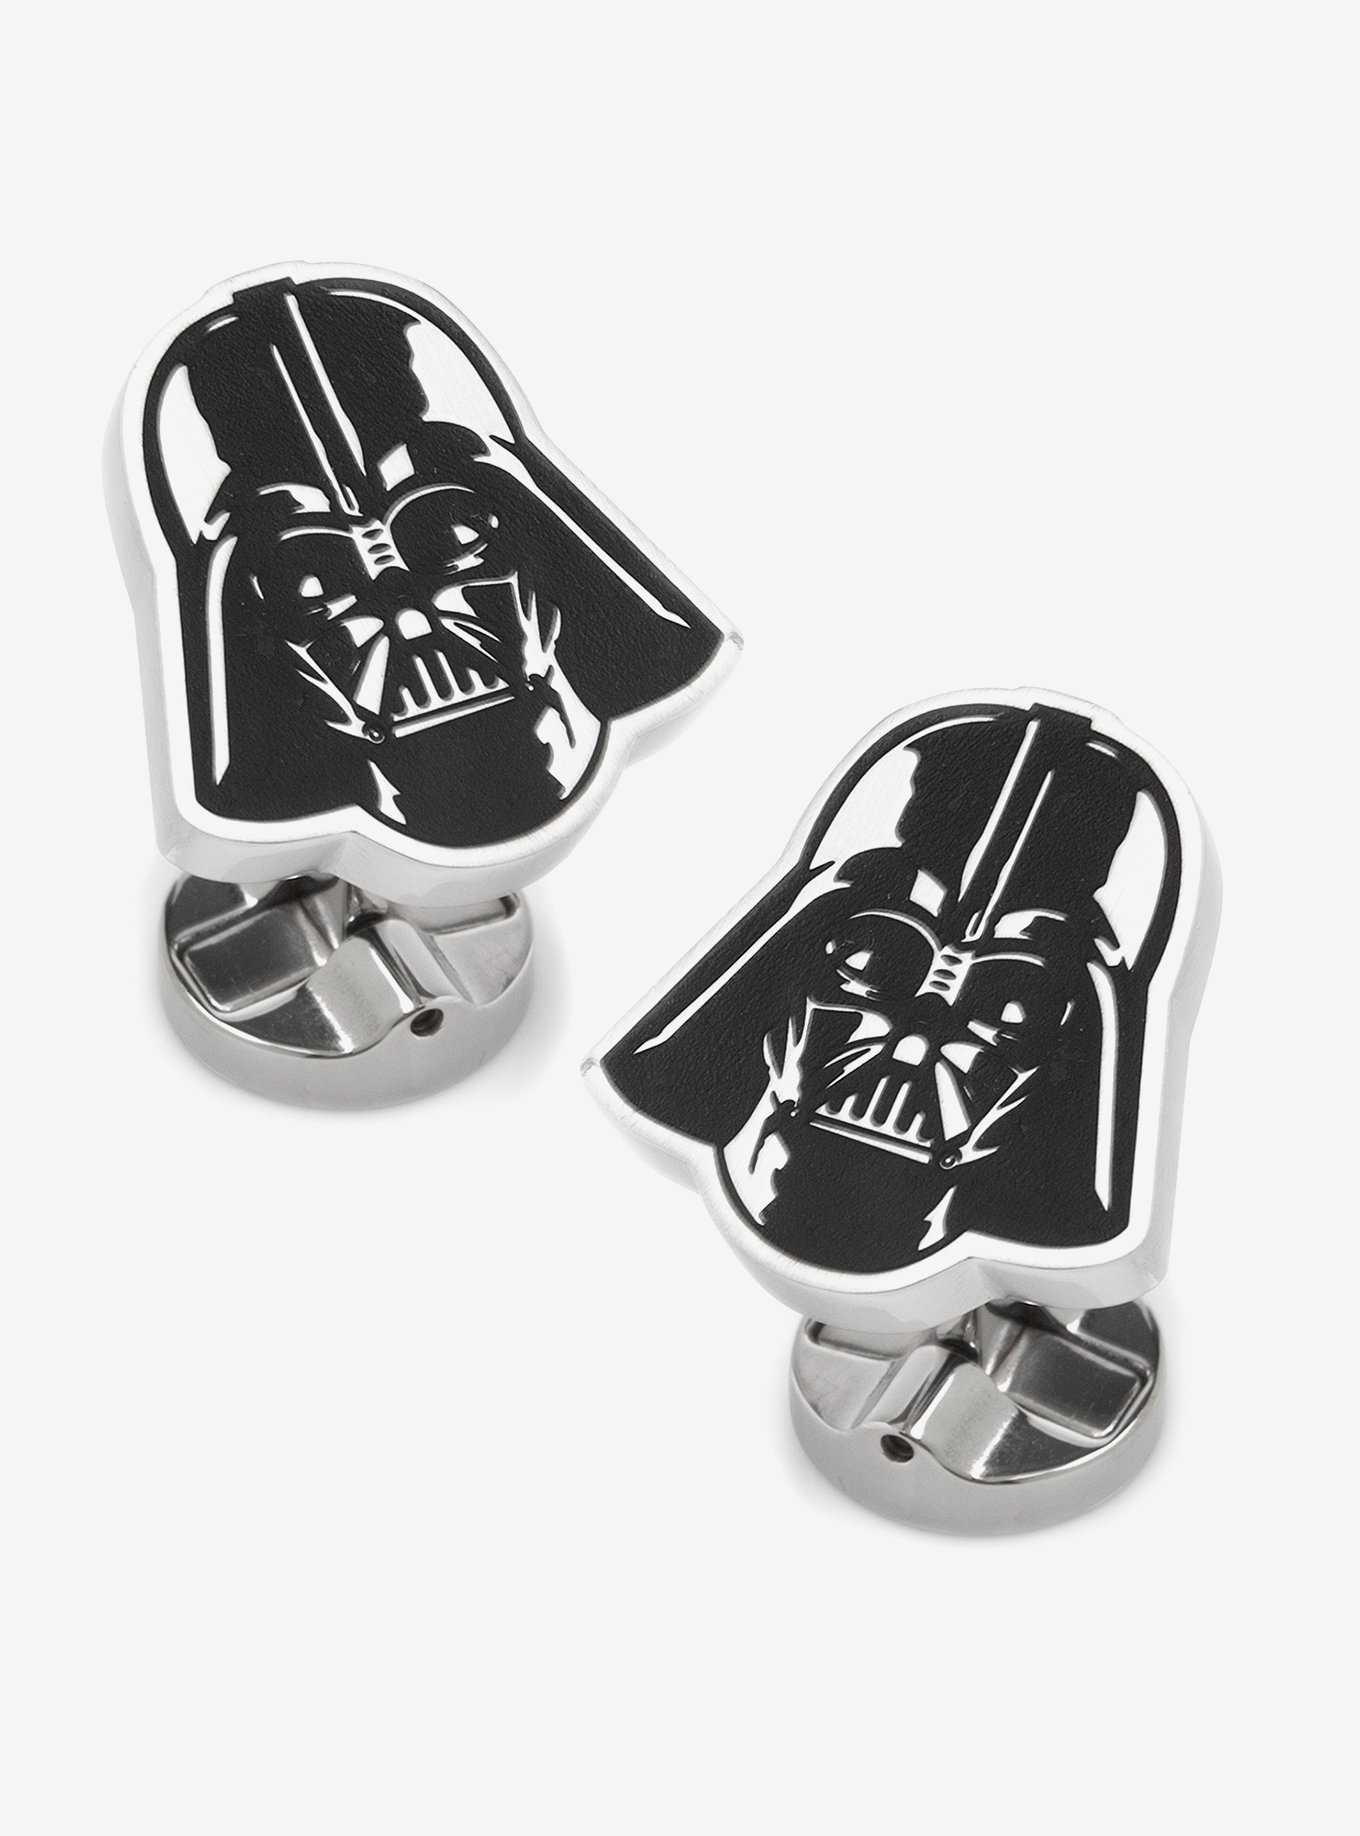 Star Wars Darth Vader Stainless Steel Cufflinks, , hi-res